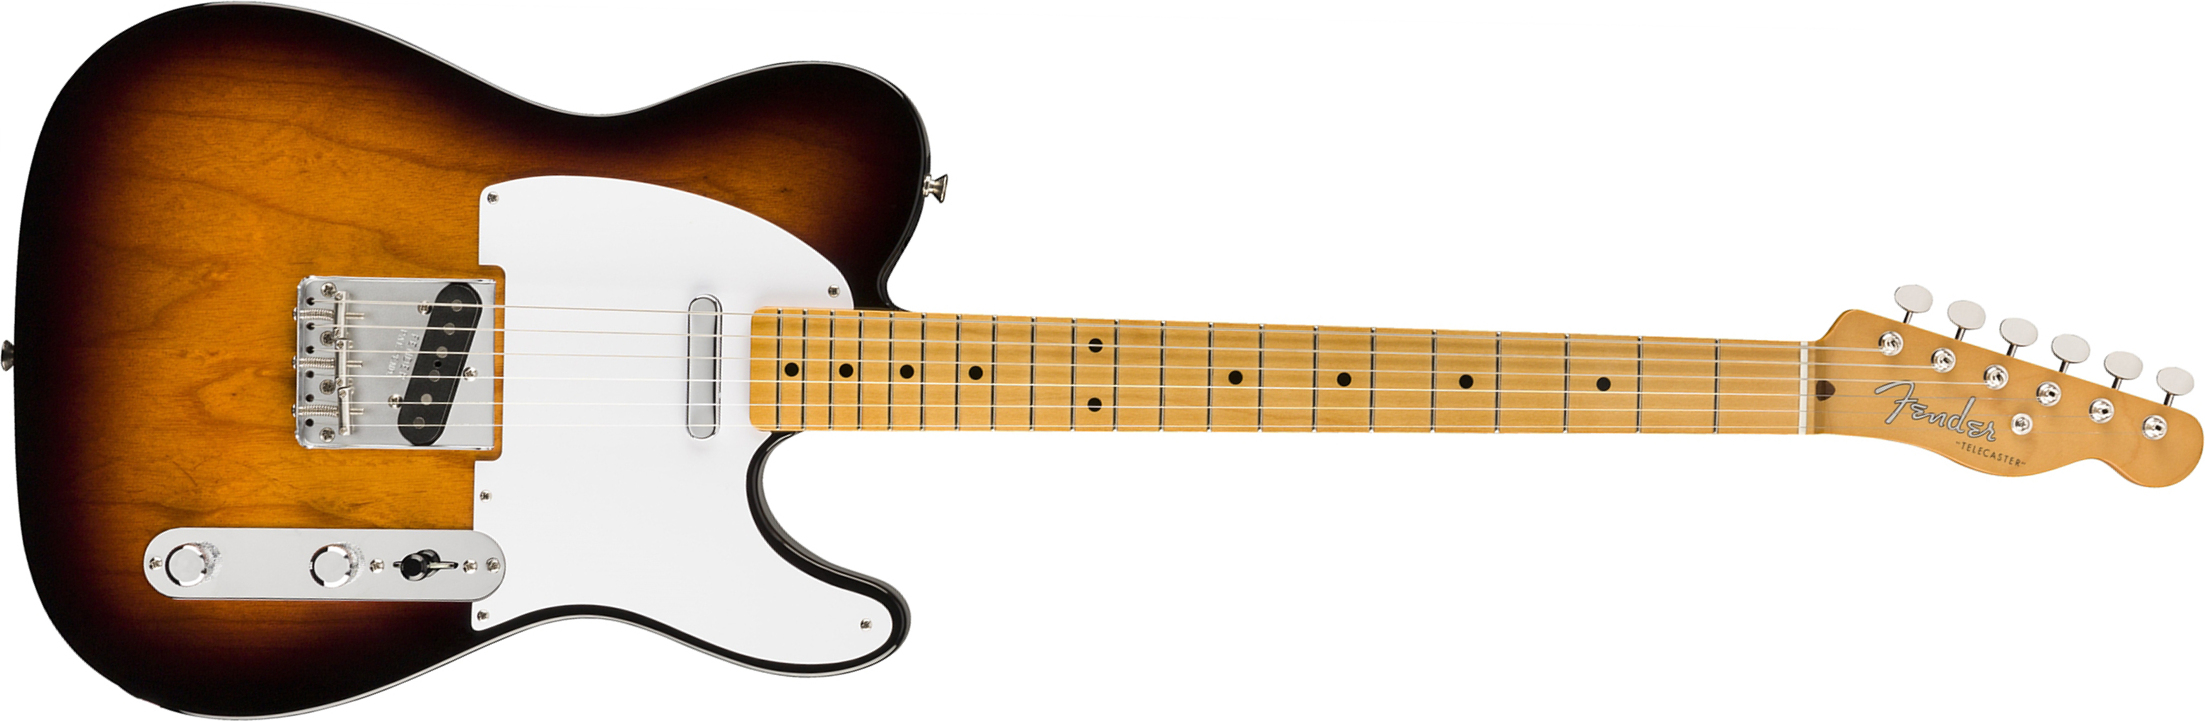 Fender Tele 50s Vintera Vintage Mex Mn - 2-color Sunburst - Tel shape electric guitar - Main picture